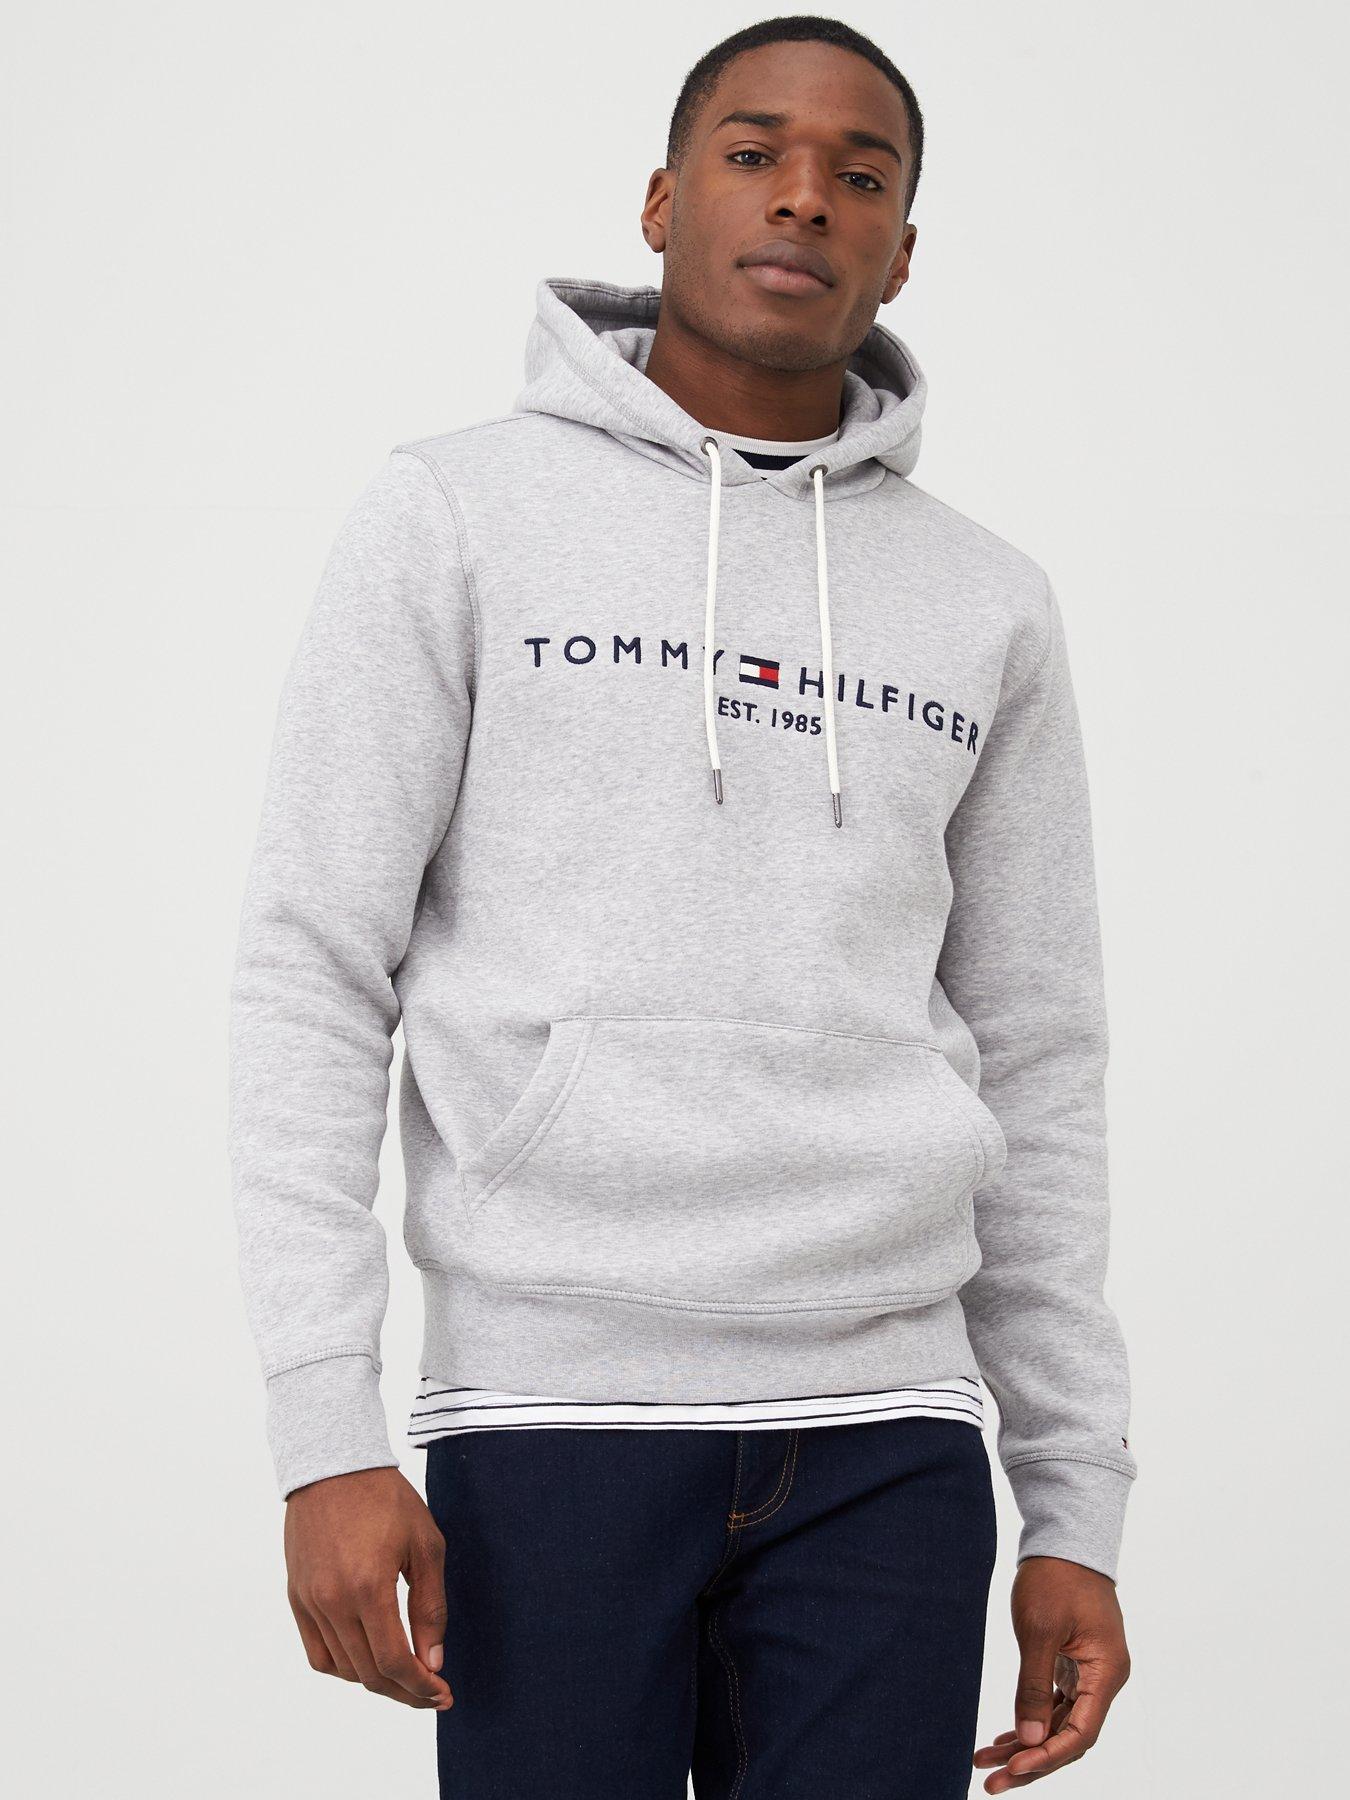 tommy hilfiger grey hoodie mens